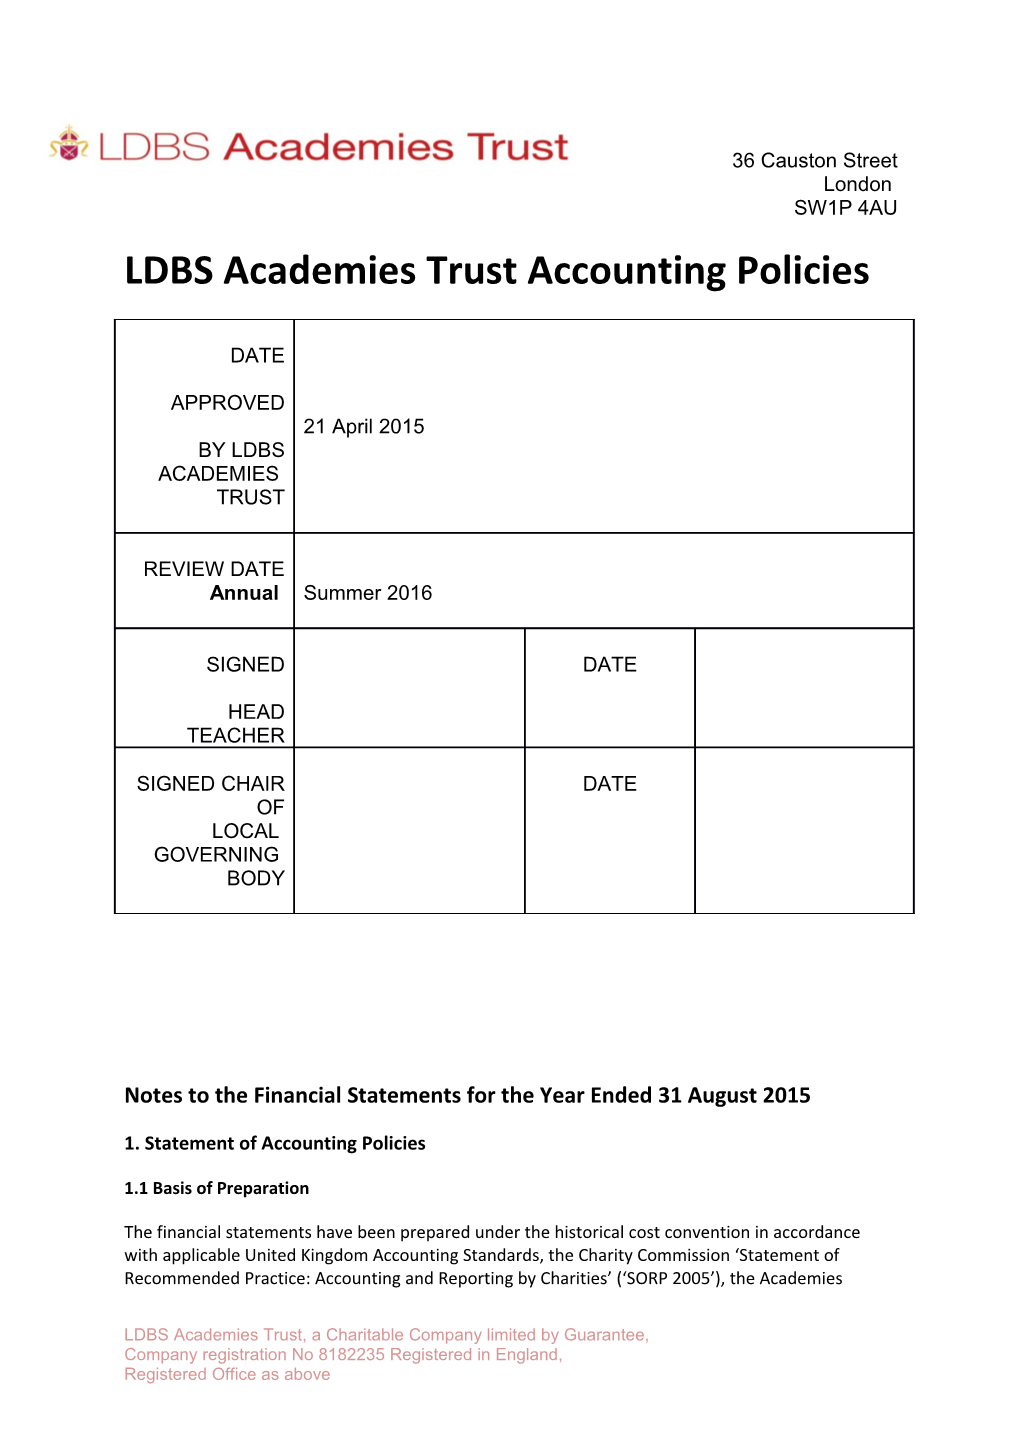 LDBS Academies Trustaccounting Policies